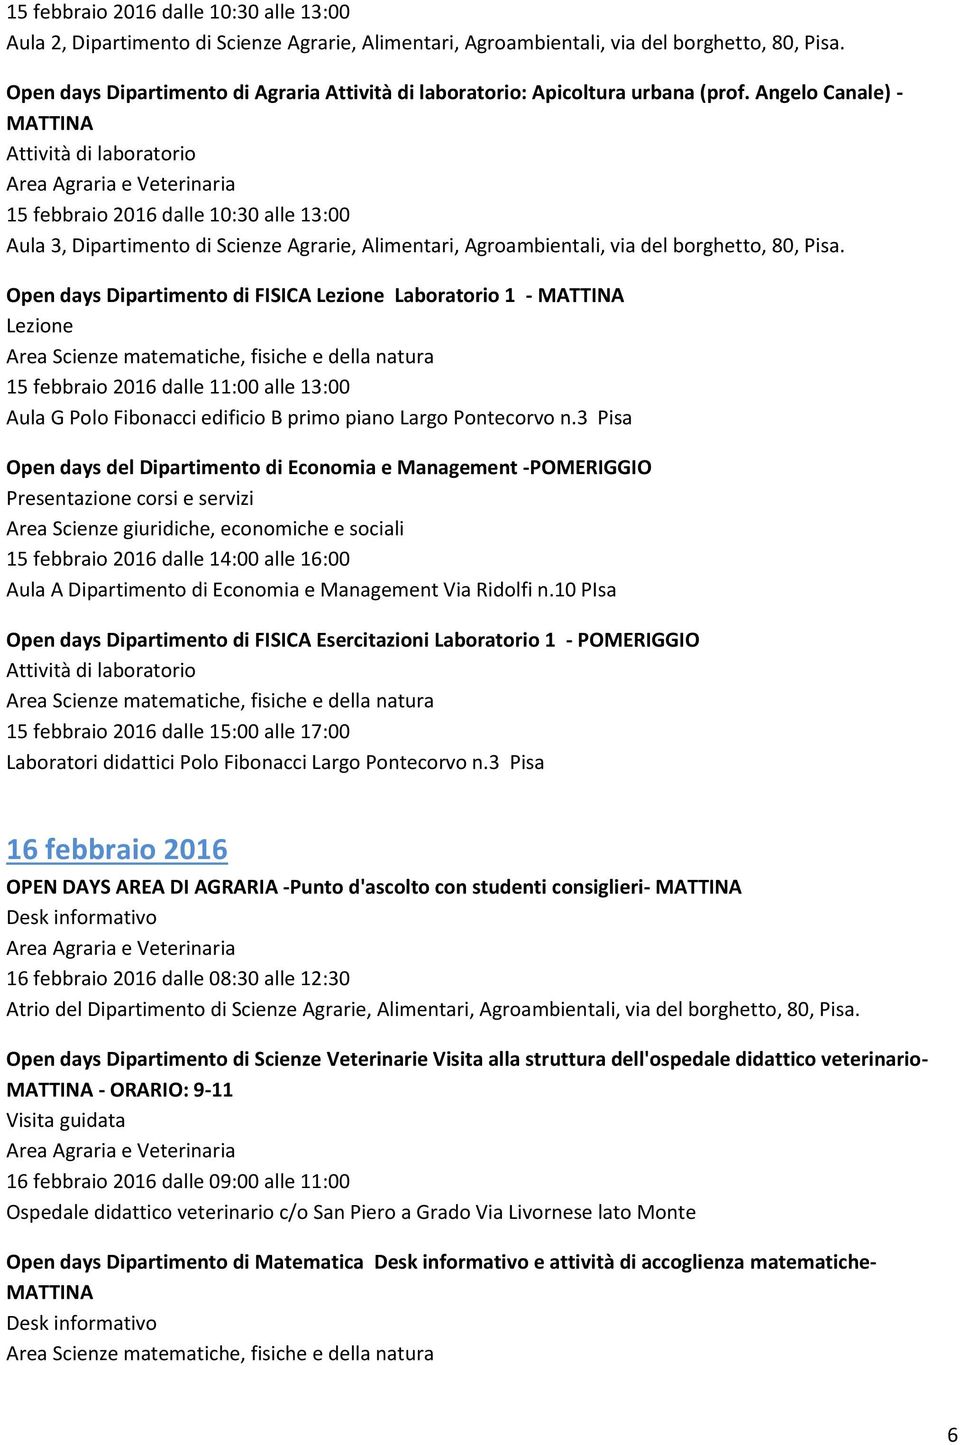 Open days Dipartimento di FISICA Laboratorio 1 - MATTINA 15 febbraio 2016 dalle 11:00 alle 13:00 Aula G Polo Fibonacci edificio B primo piano Largo Pontecorvo n.